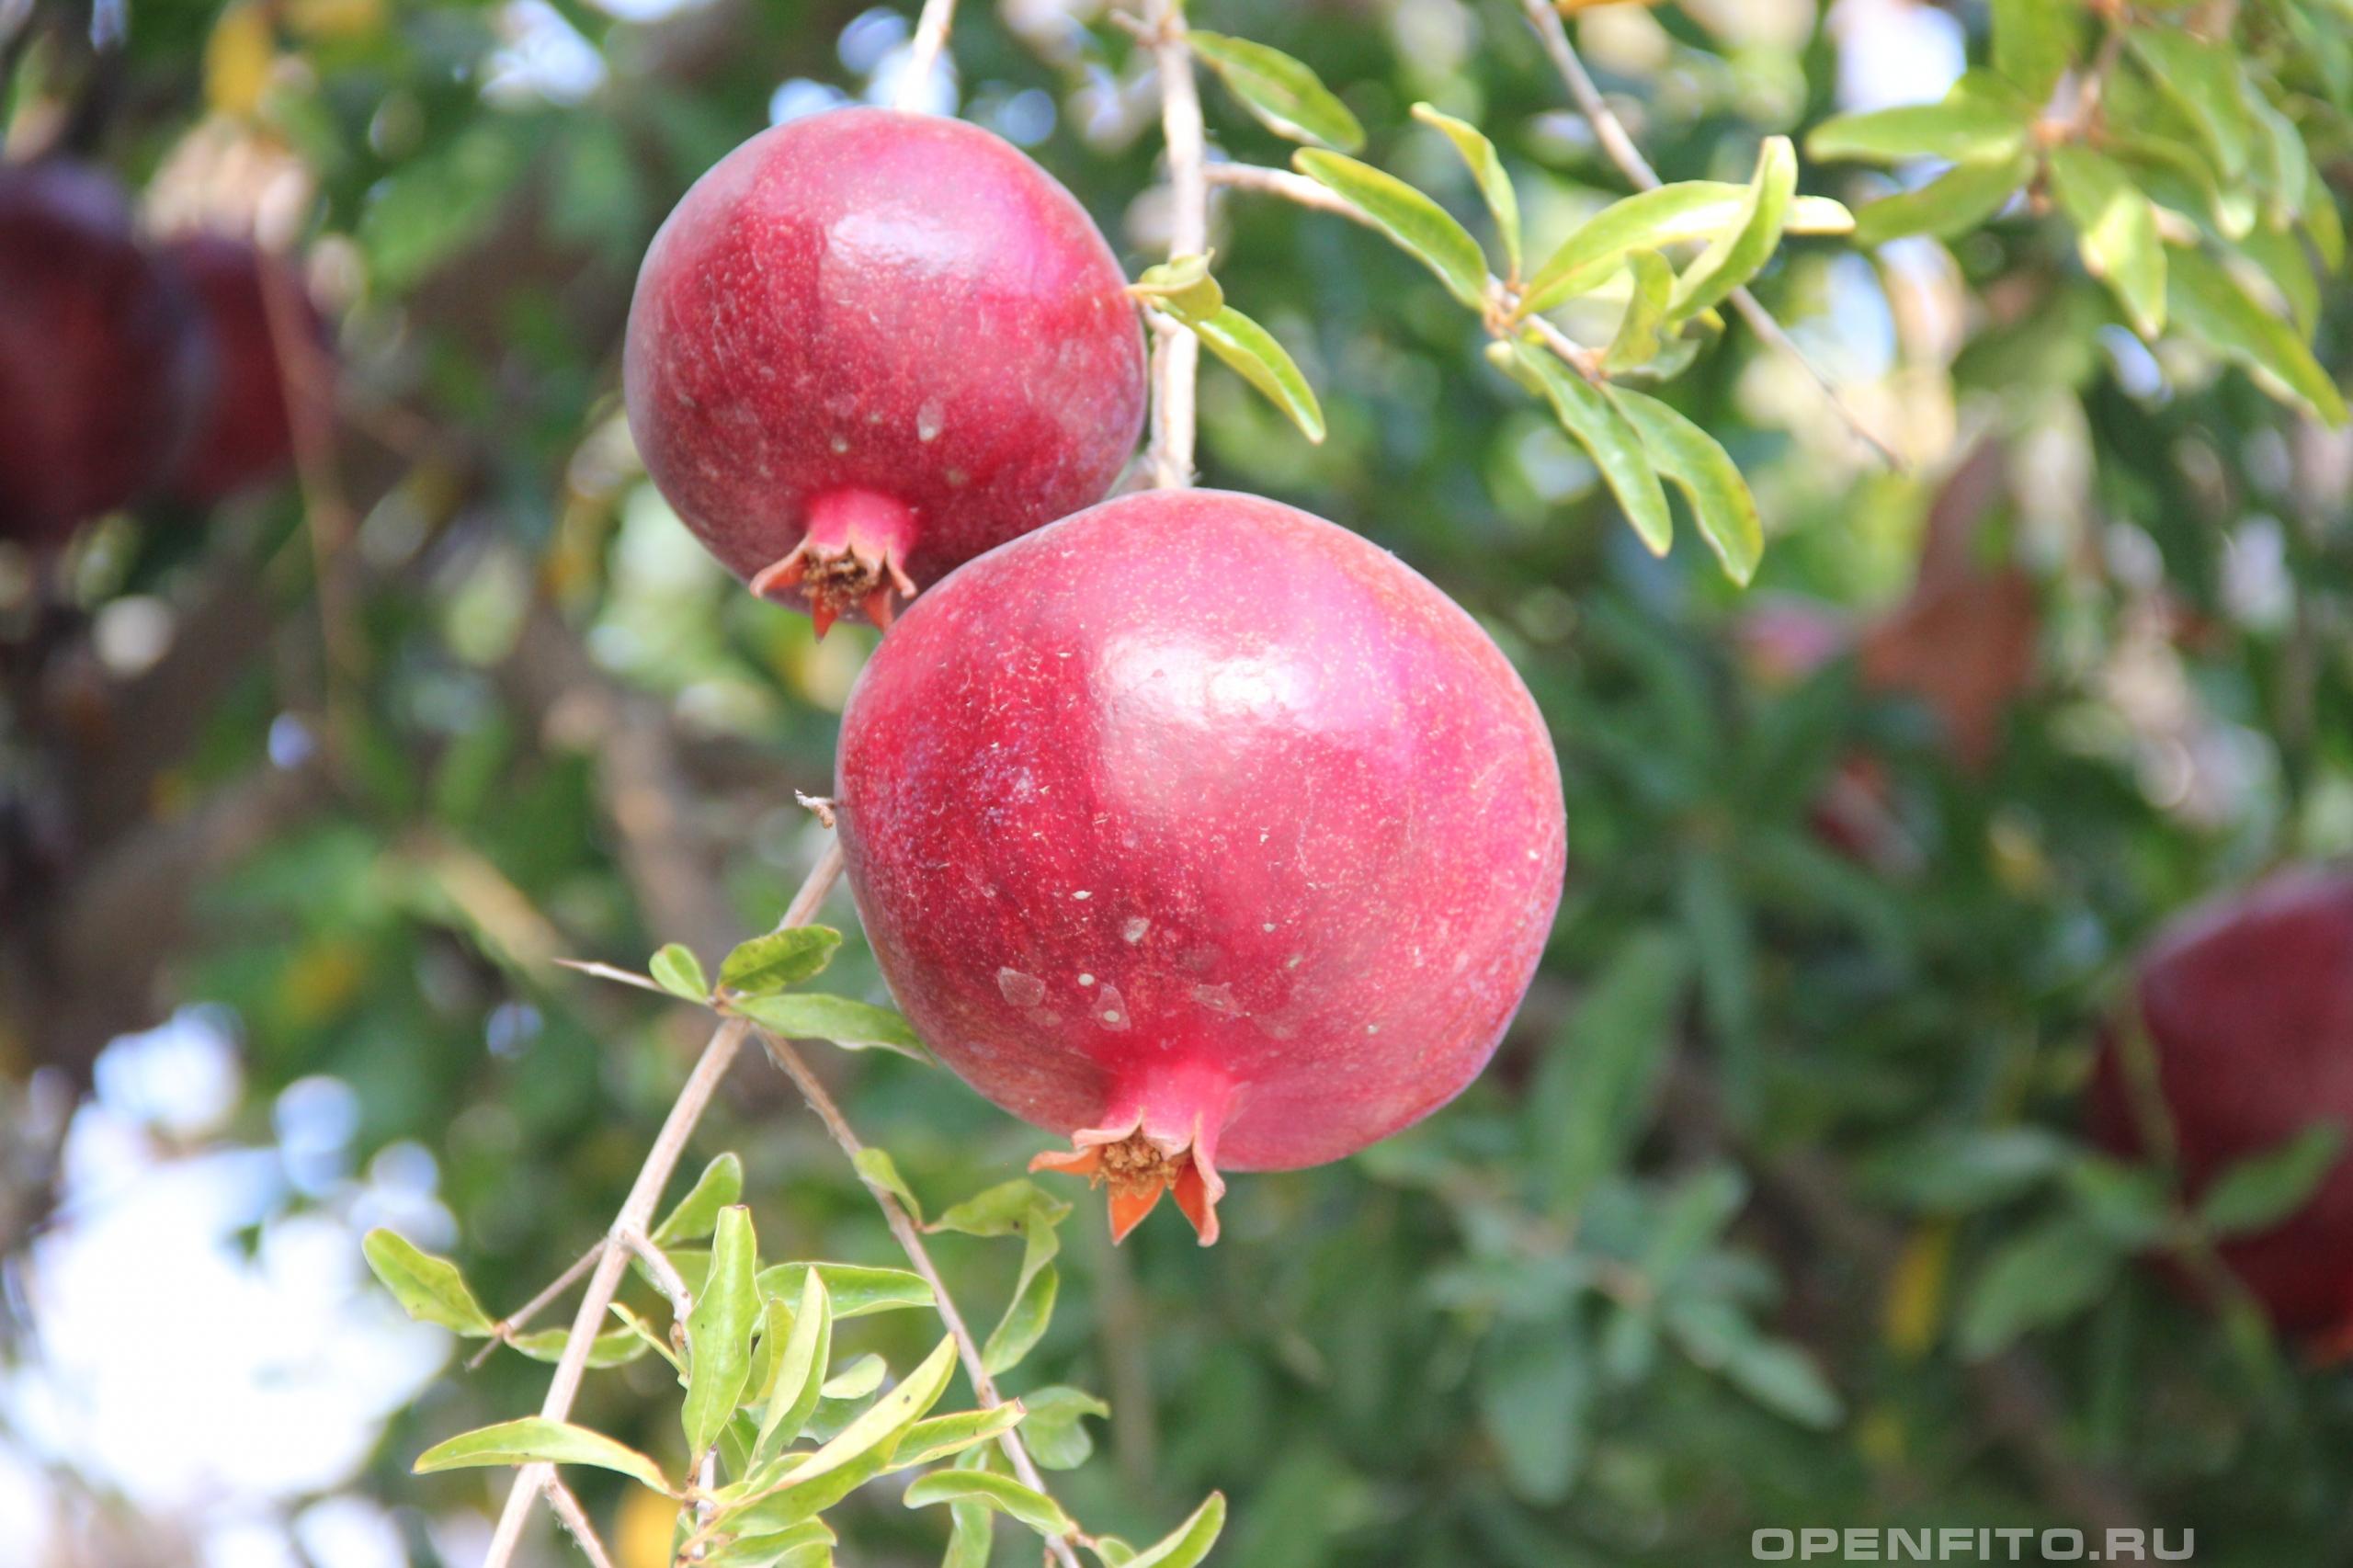 Гранат обыкновенный - фотография плодов